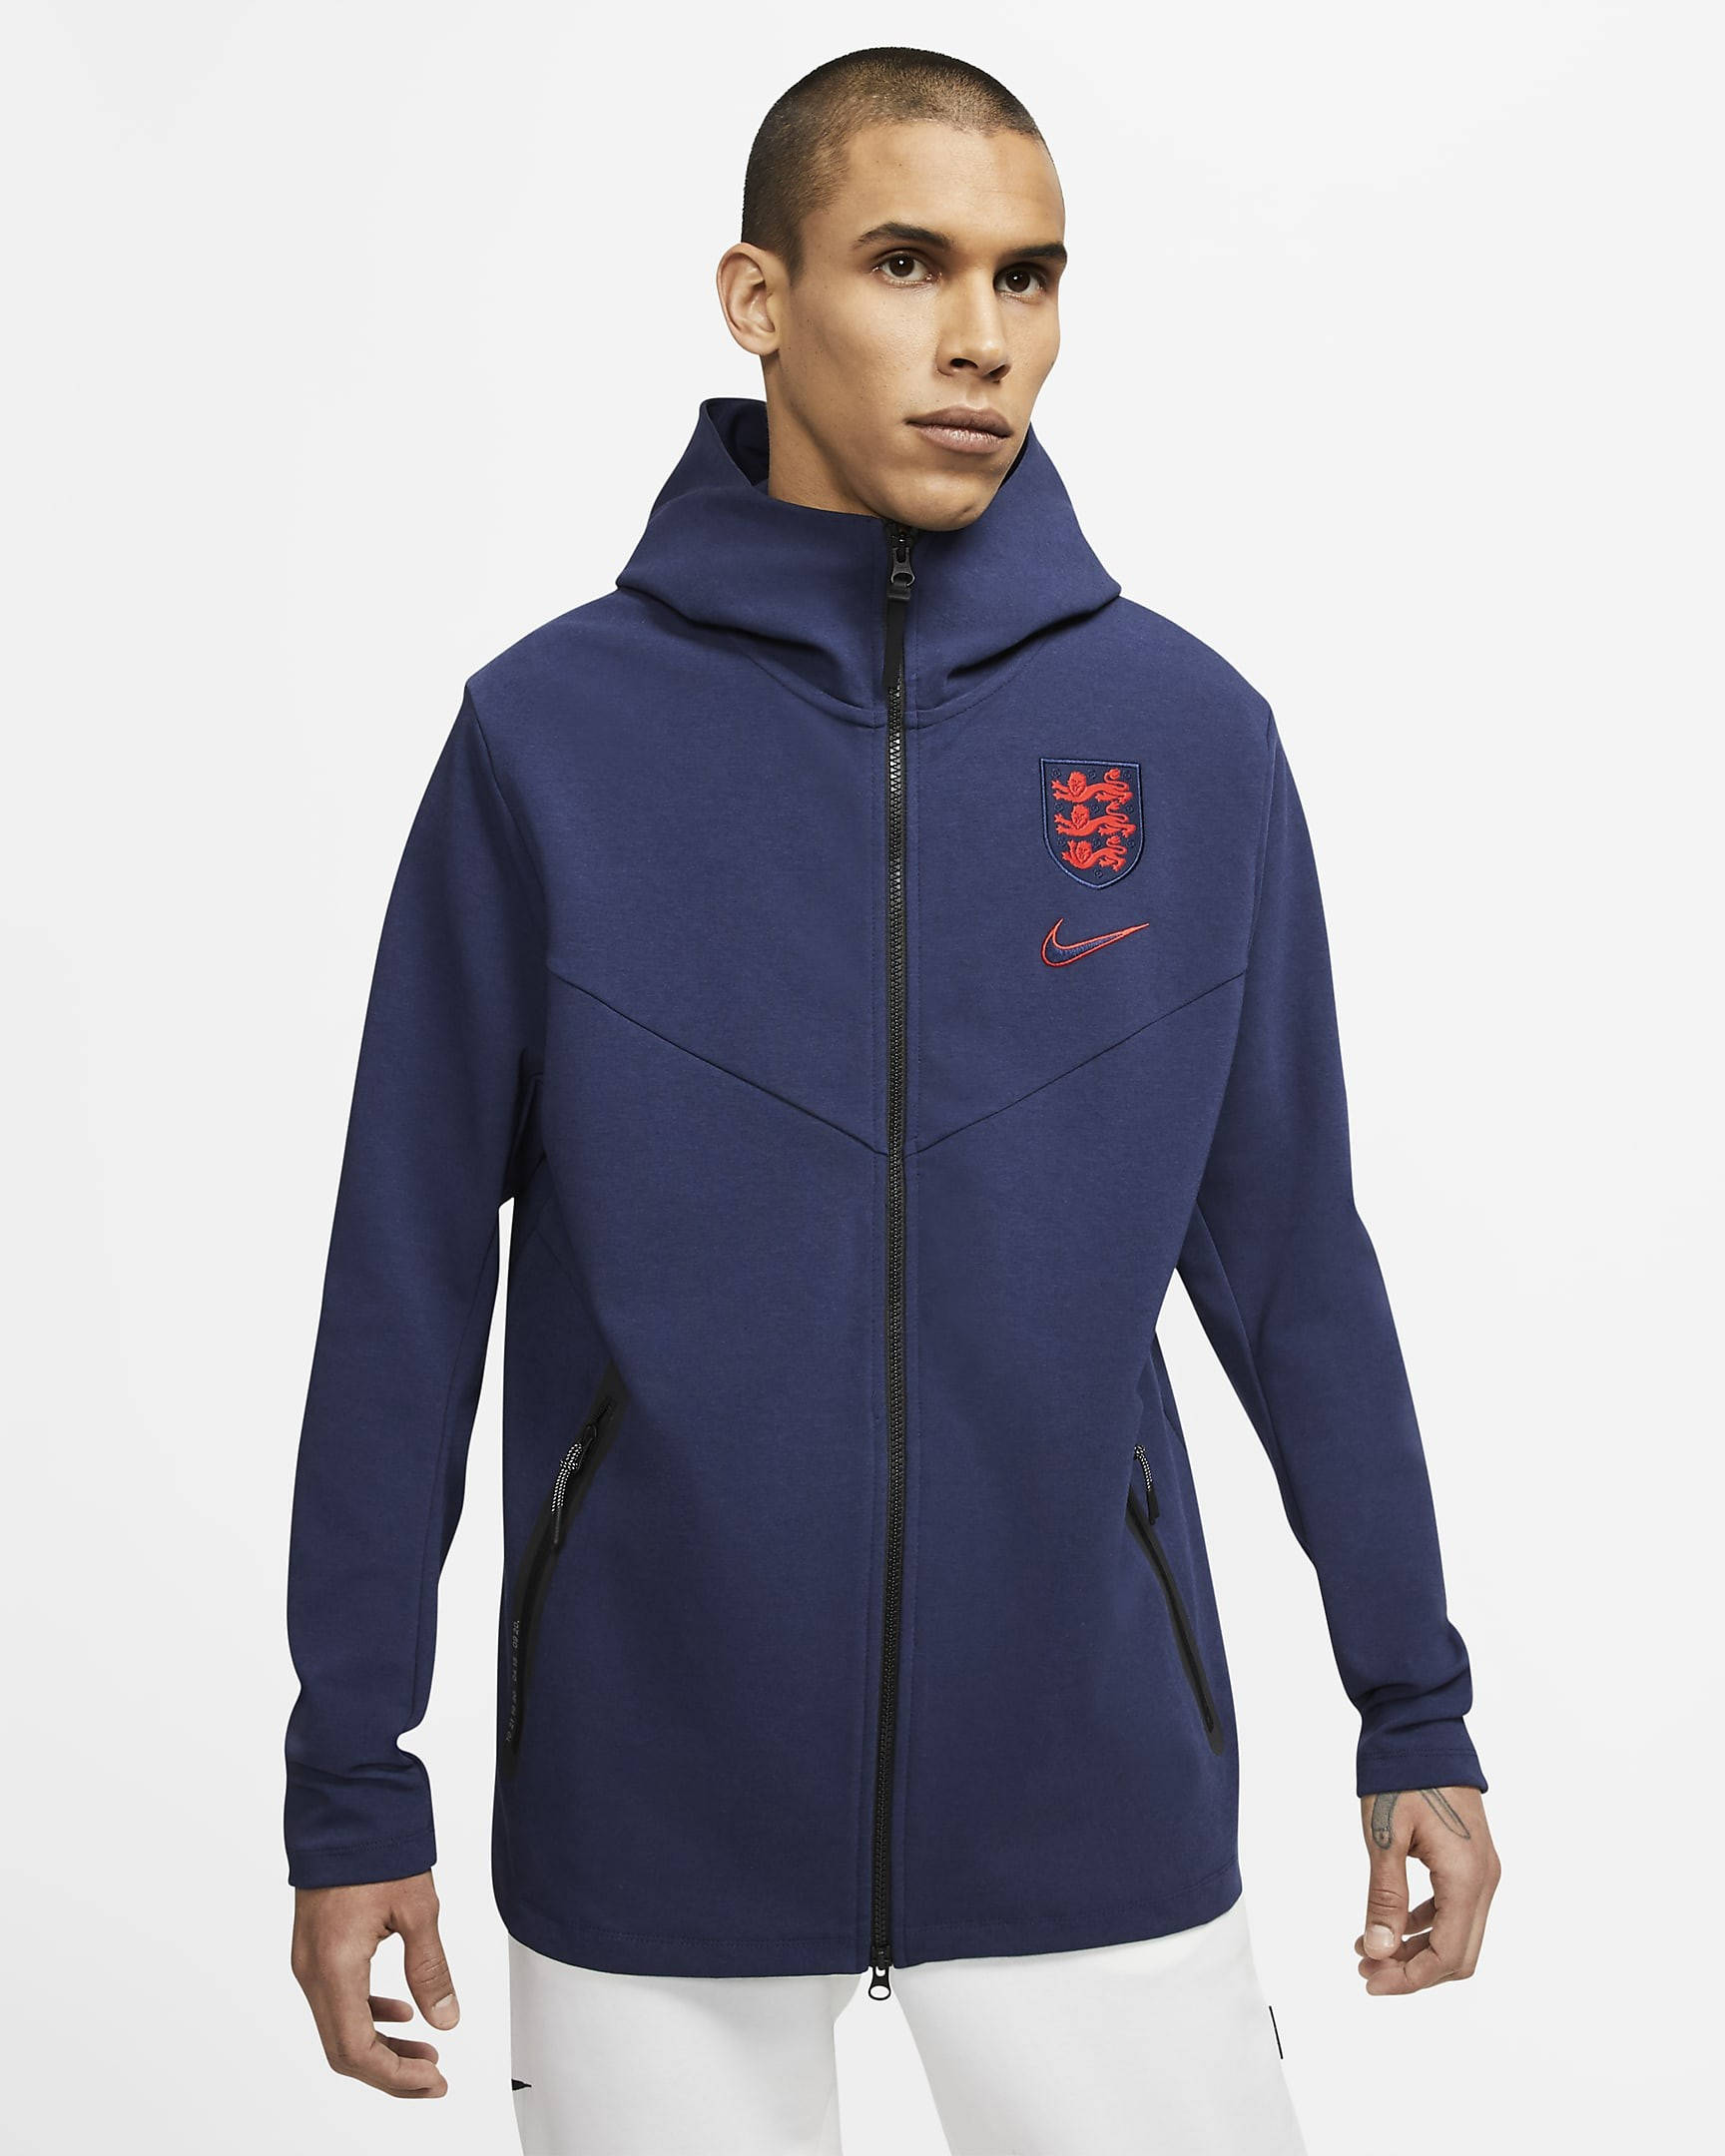 Sta in plaats daarvan op gespannen Intentie Nike England Tech Pack Full-Zip Hoodie - Midnight Navy | The Sole Supplier